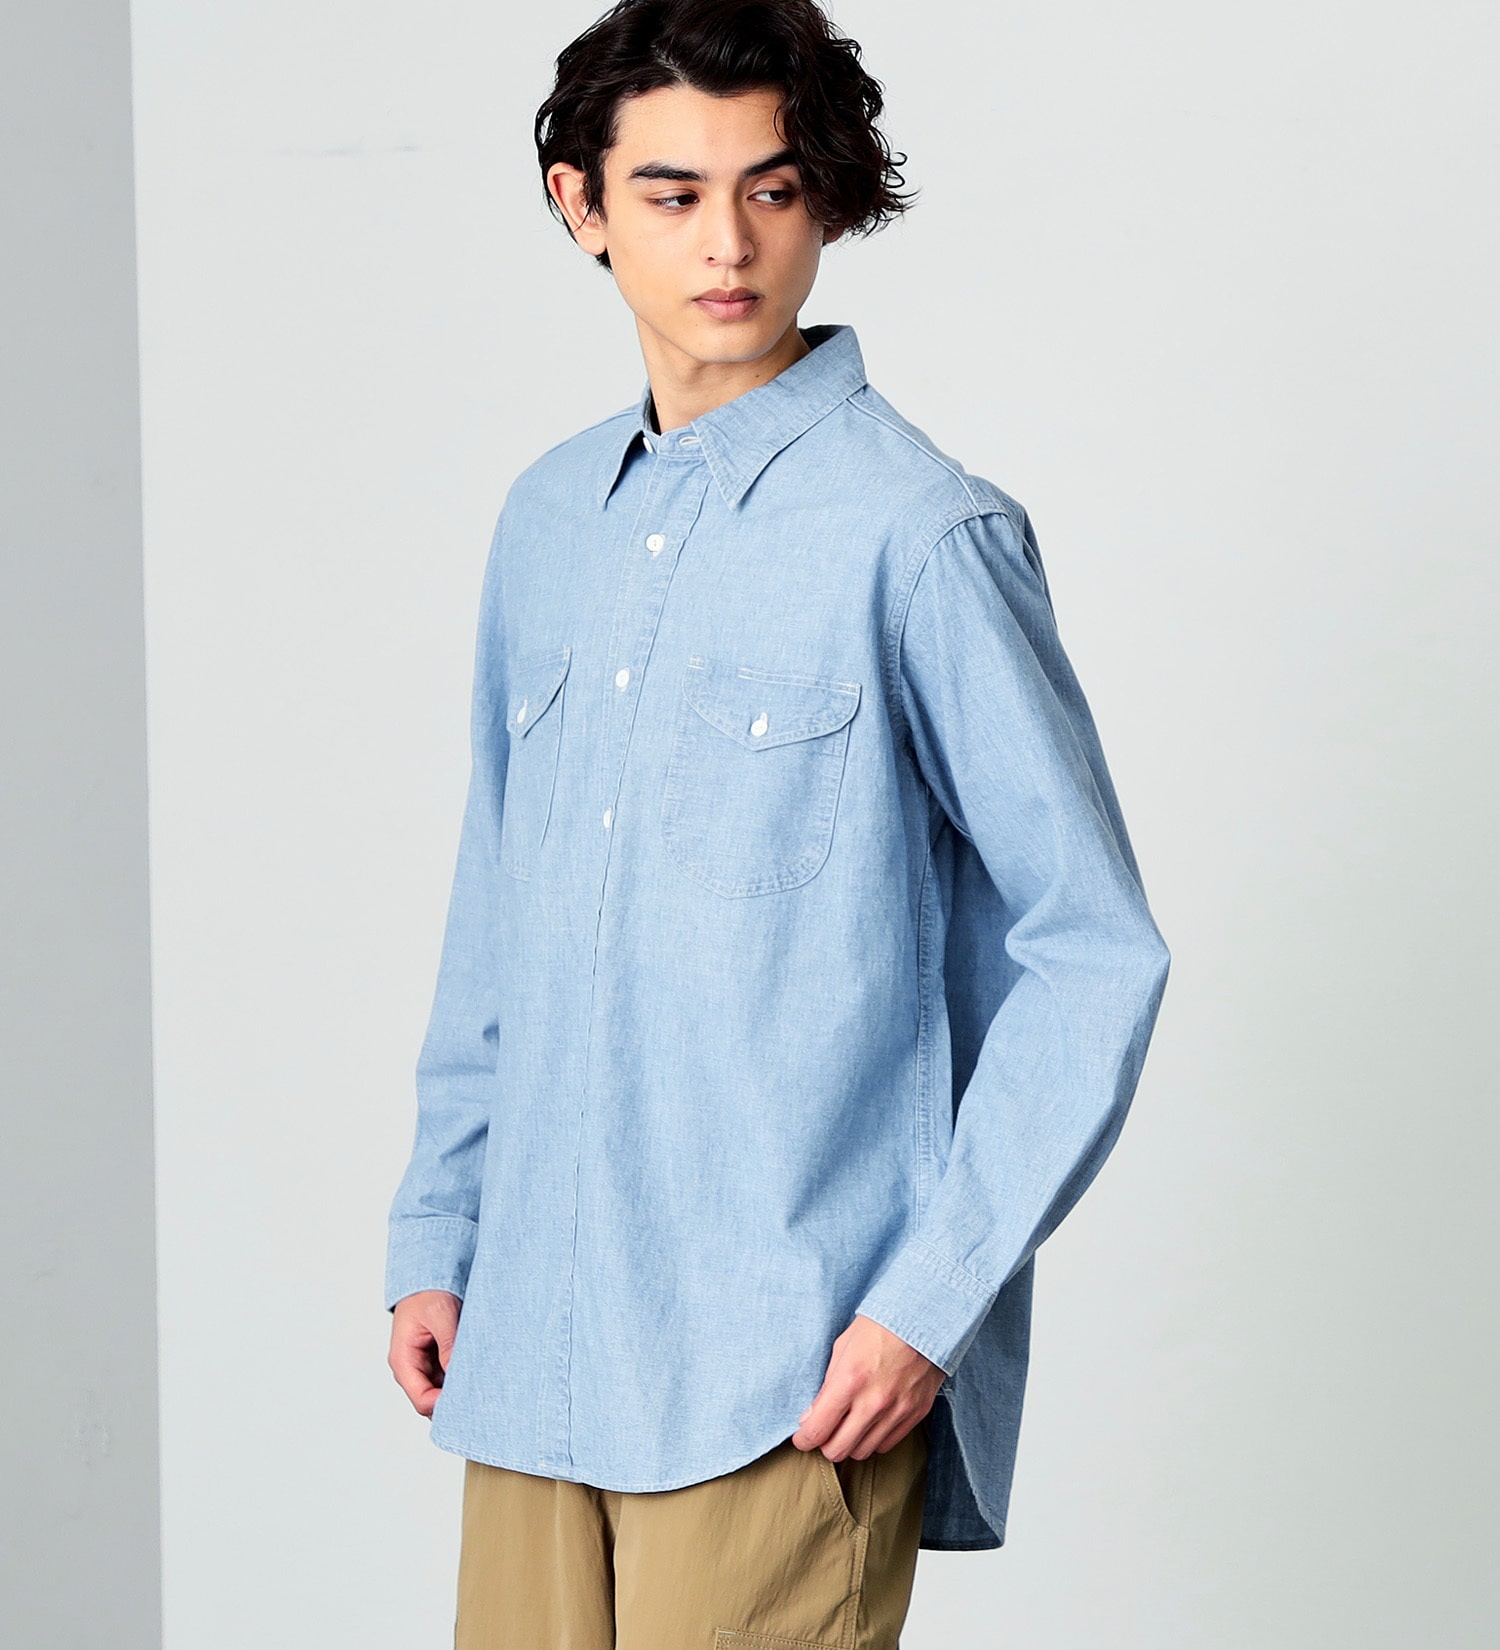 Lee(リー)のワークシャツ|トップス/シャツ/ブラウス/メンズ|淡色ブルー